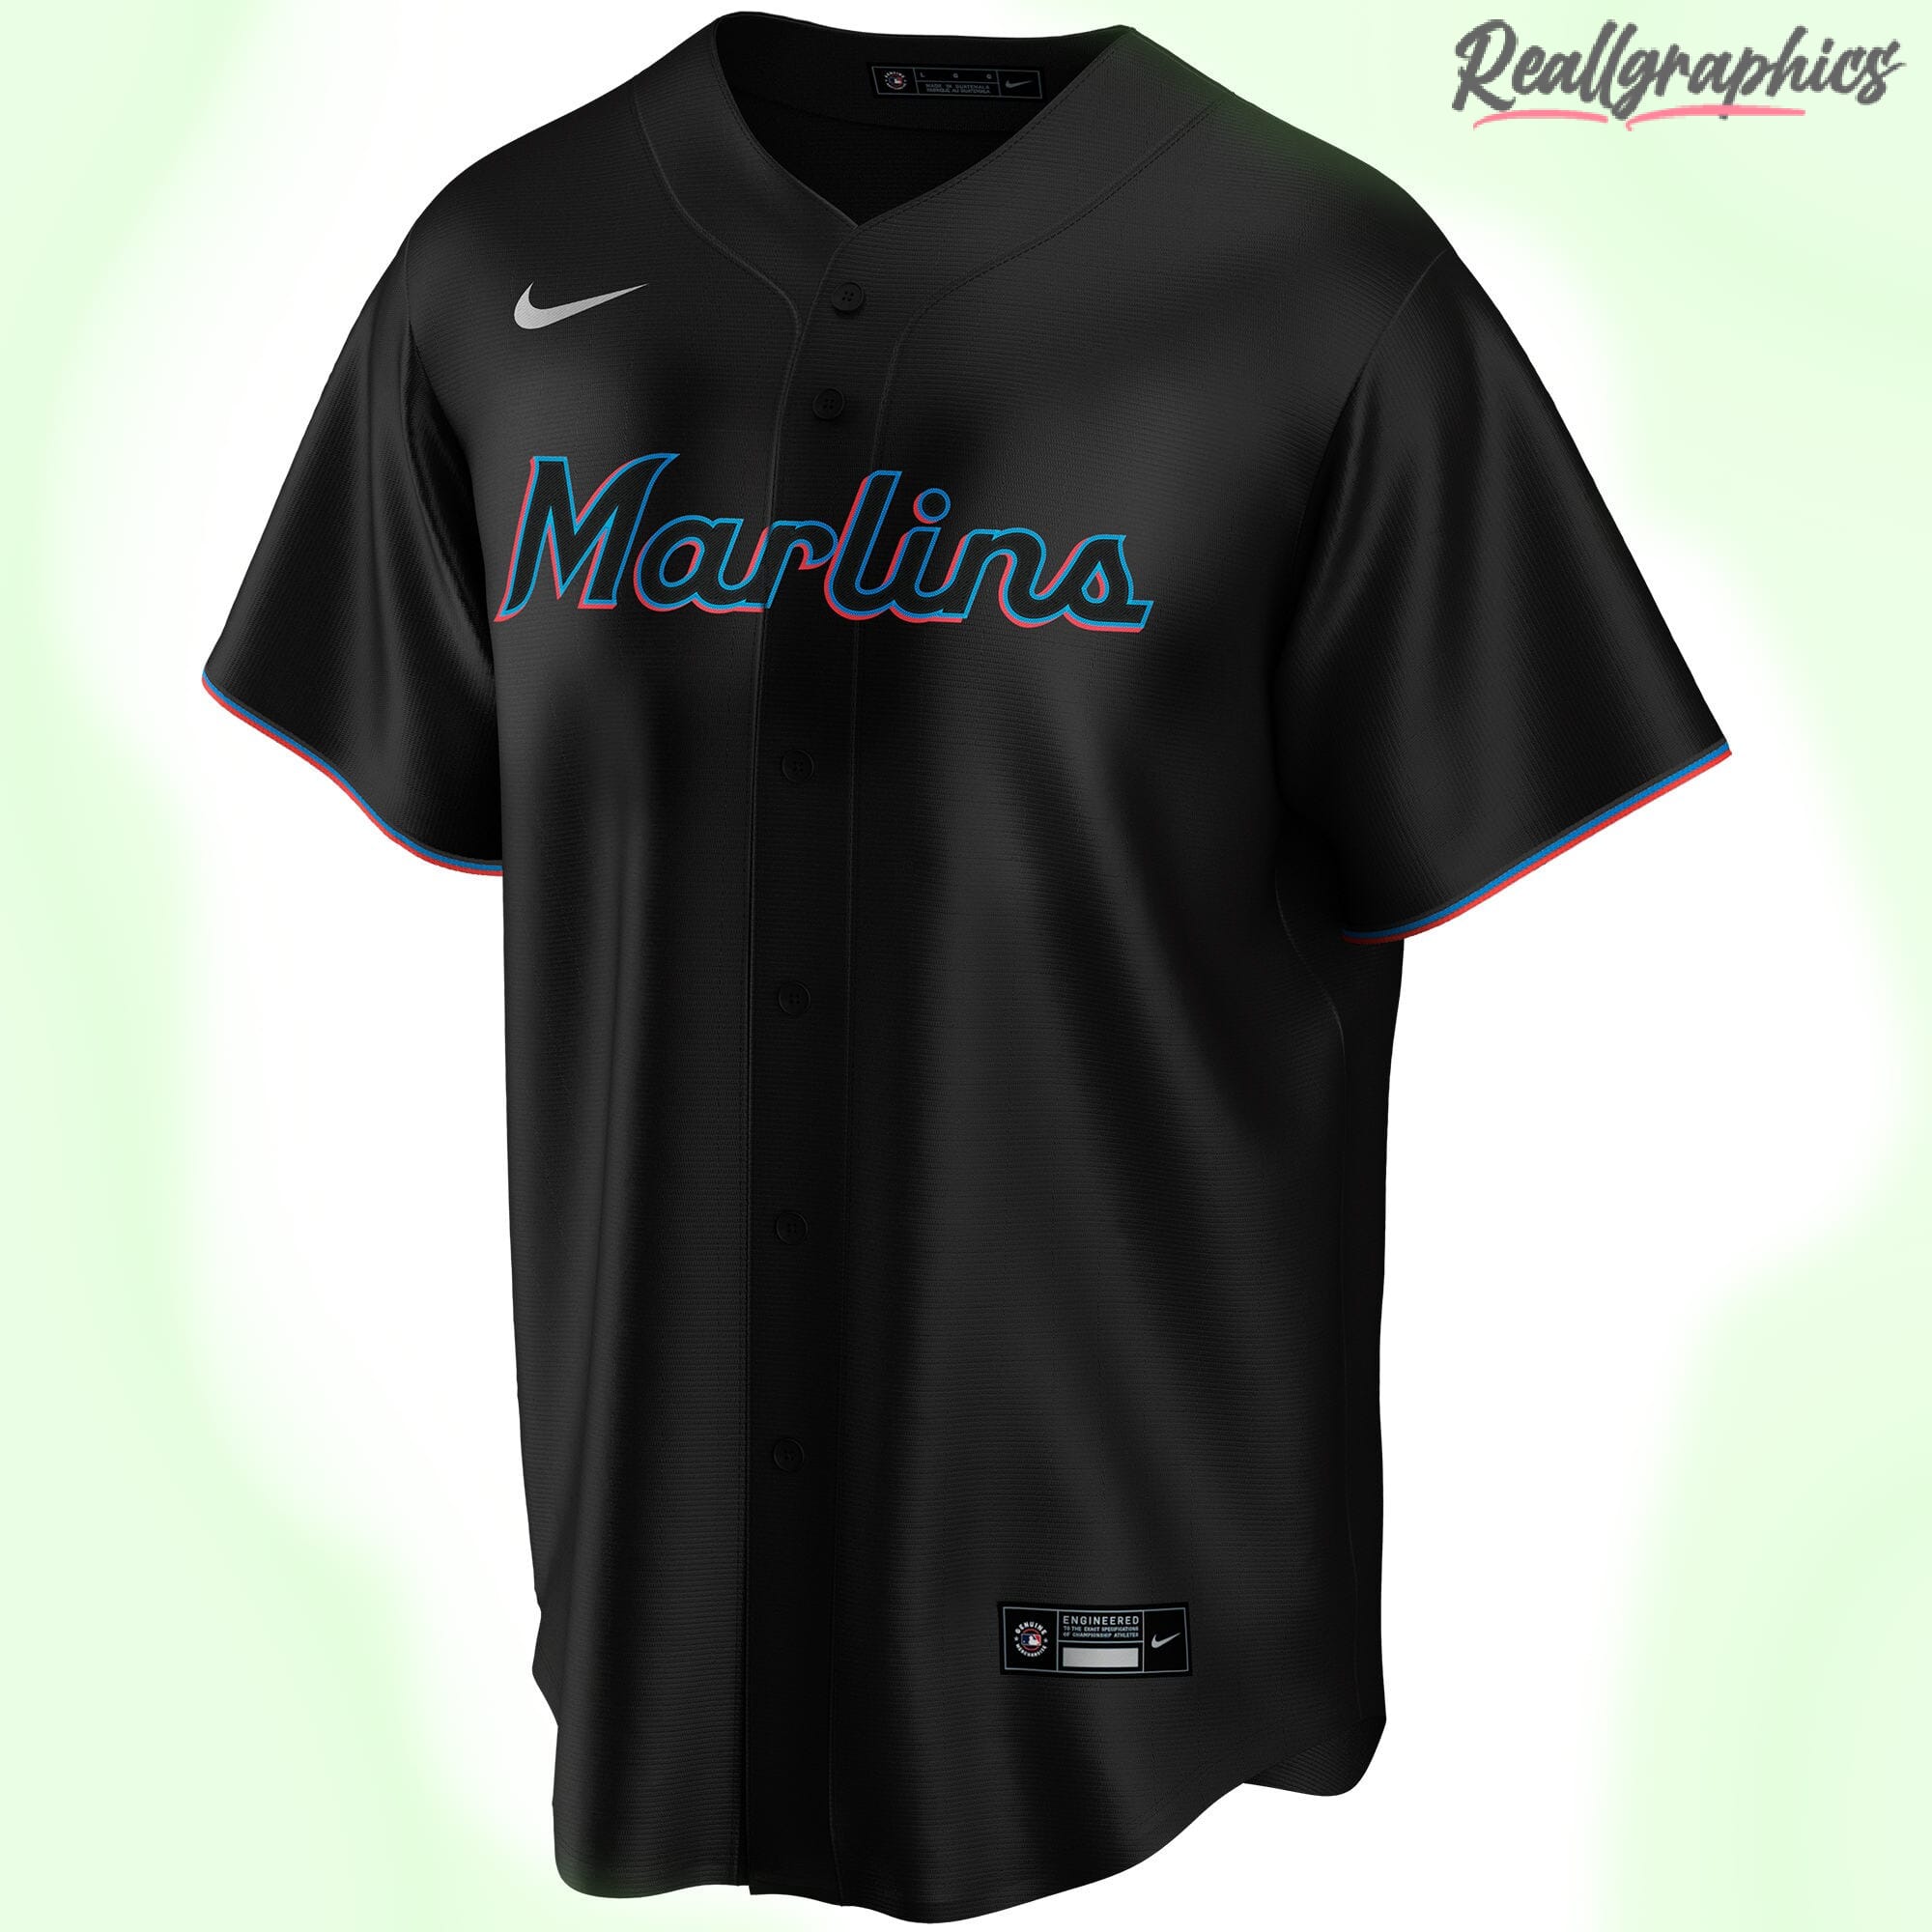 Miami Marlins MLB Black Alternate Custom Jersey, Marlins Baseball